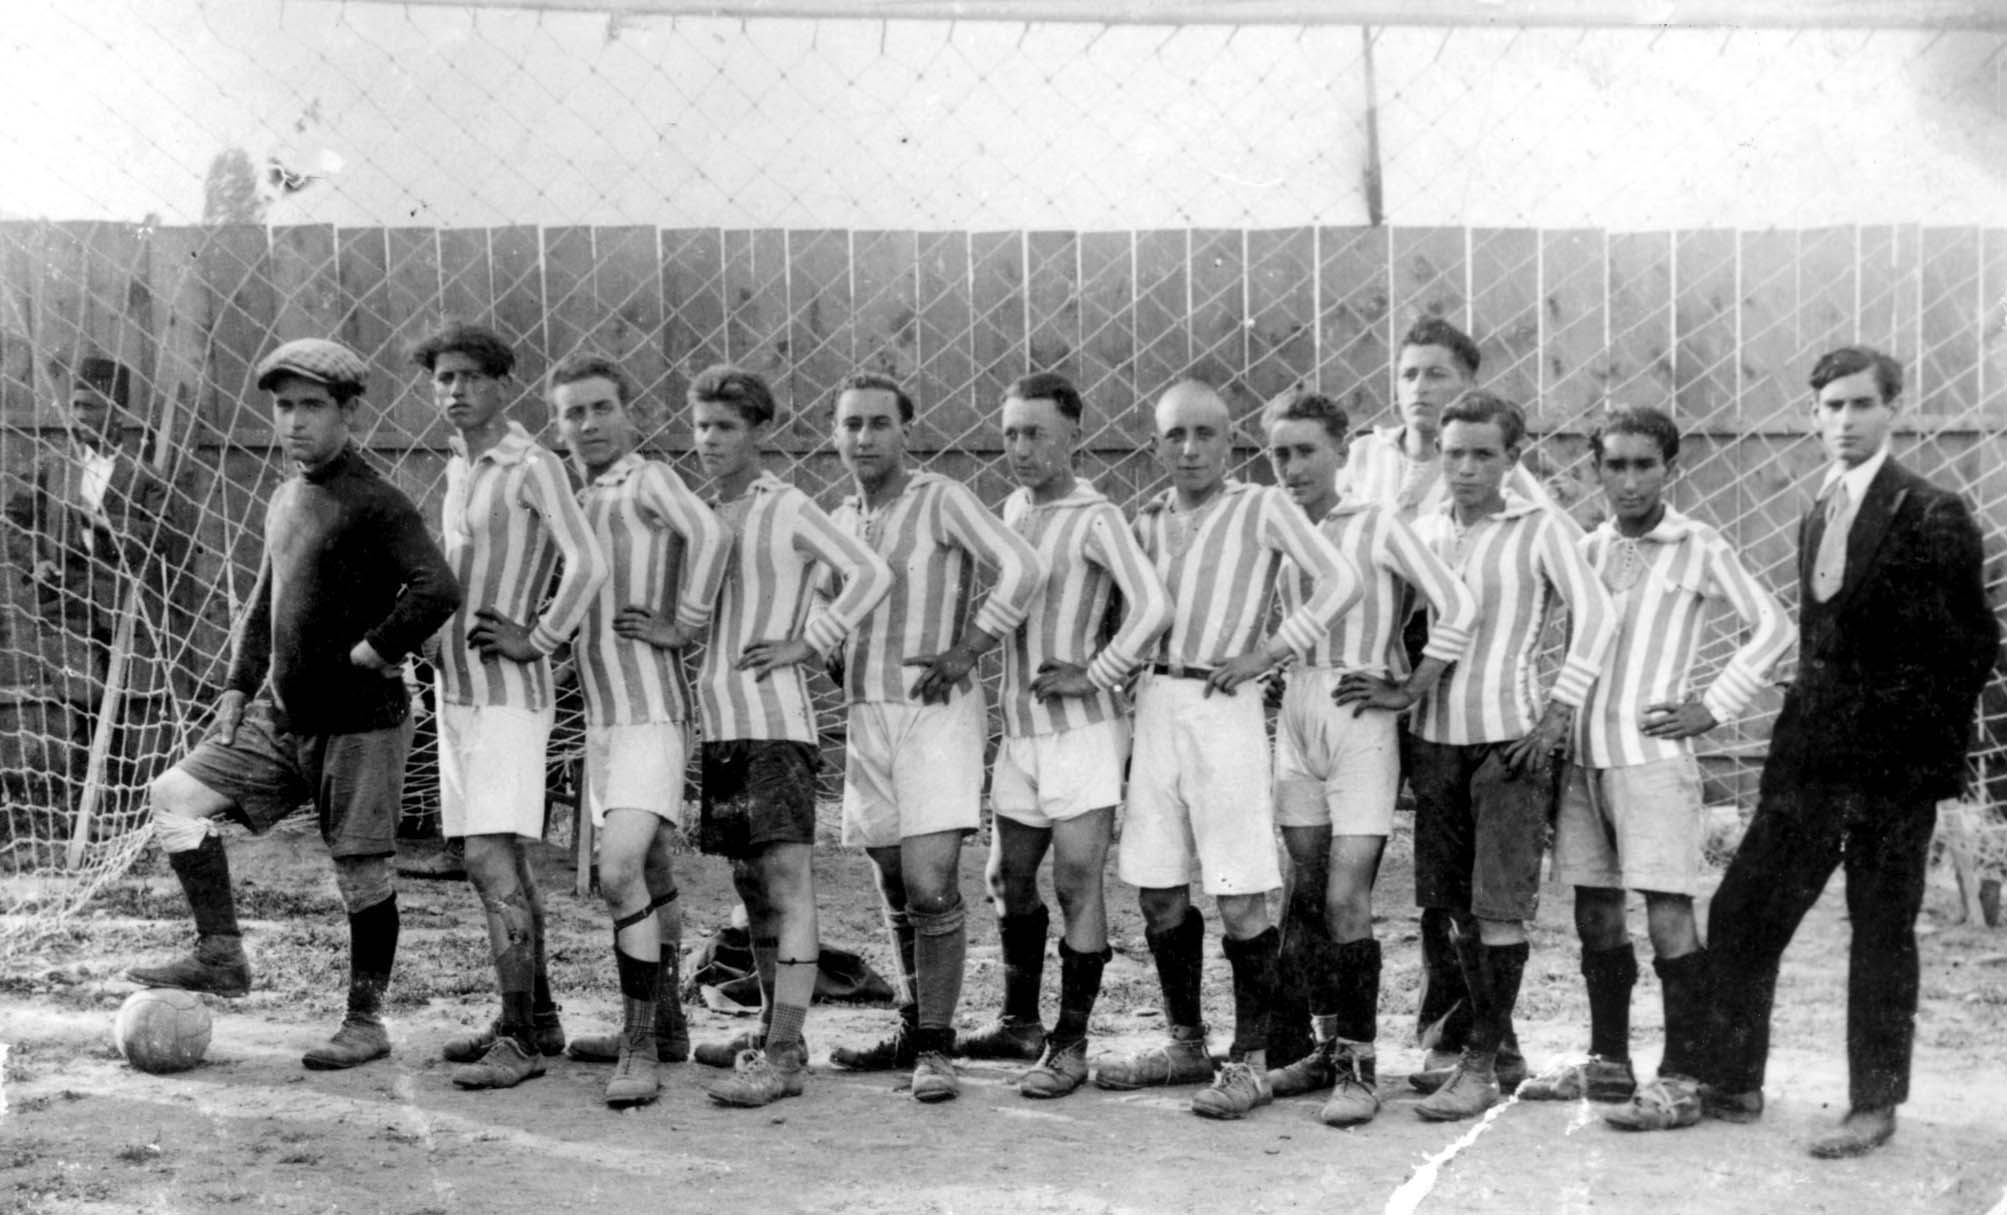 Manastir (Bitola), Mazedonien, 14.8.1928, Fußballmannschaft